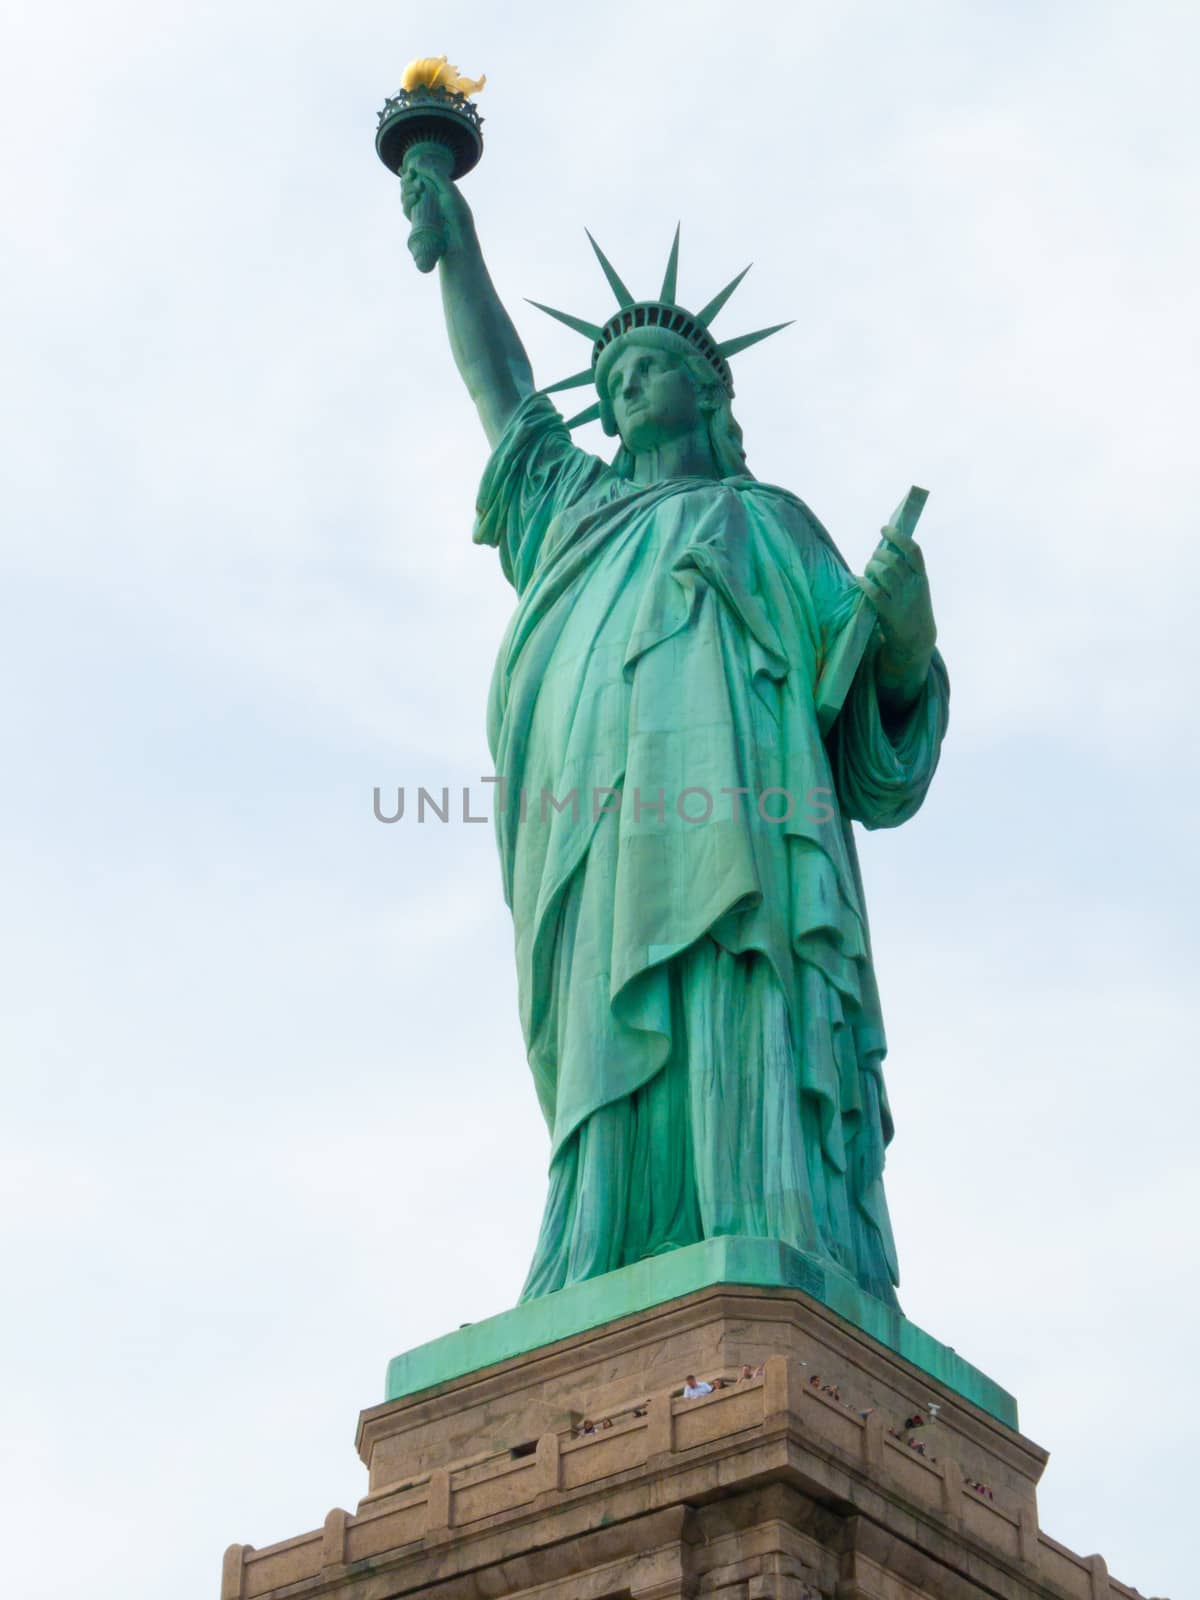 Statue of Liberty by Jule_Berlin